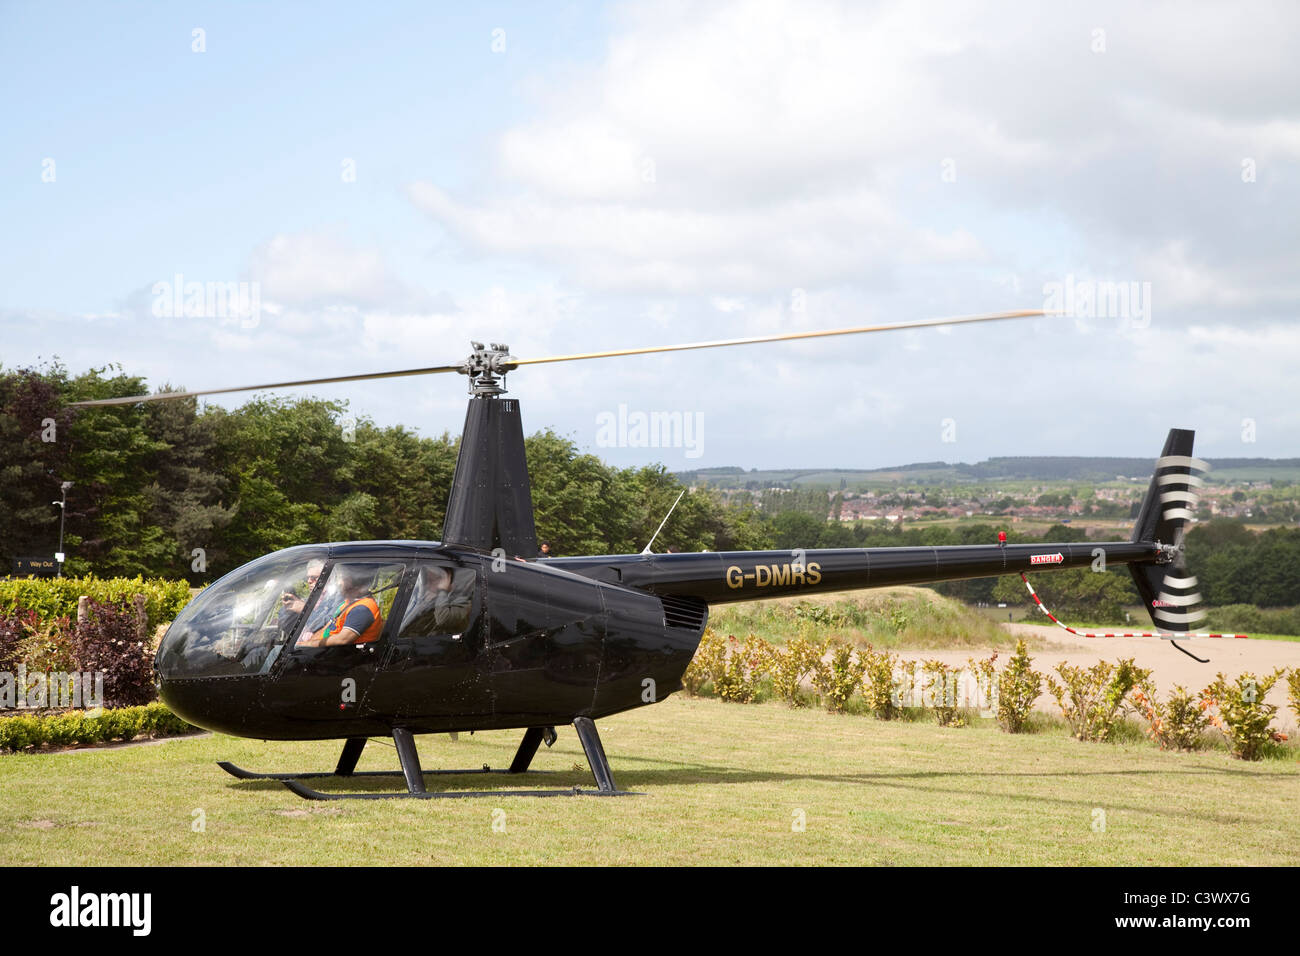 Un hélicoptère à un salon de l'automobile de luxe offrant des tours de passagers pour recueillir des fonds pour des organismes de bienfaisance England UK Banque D'Images